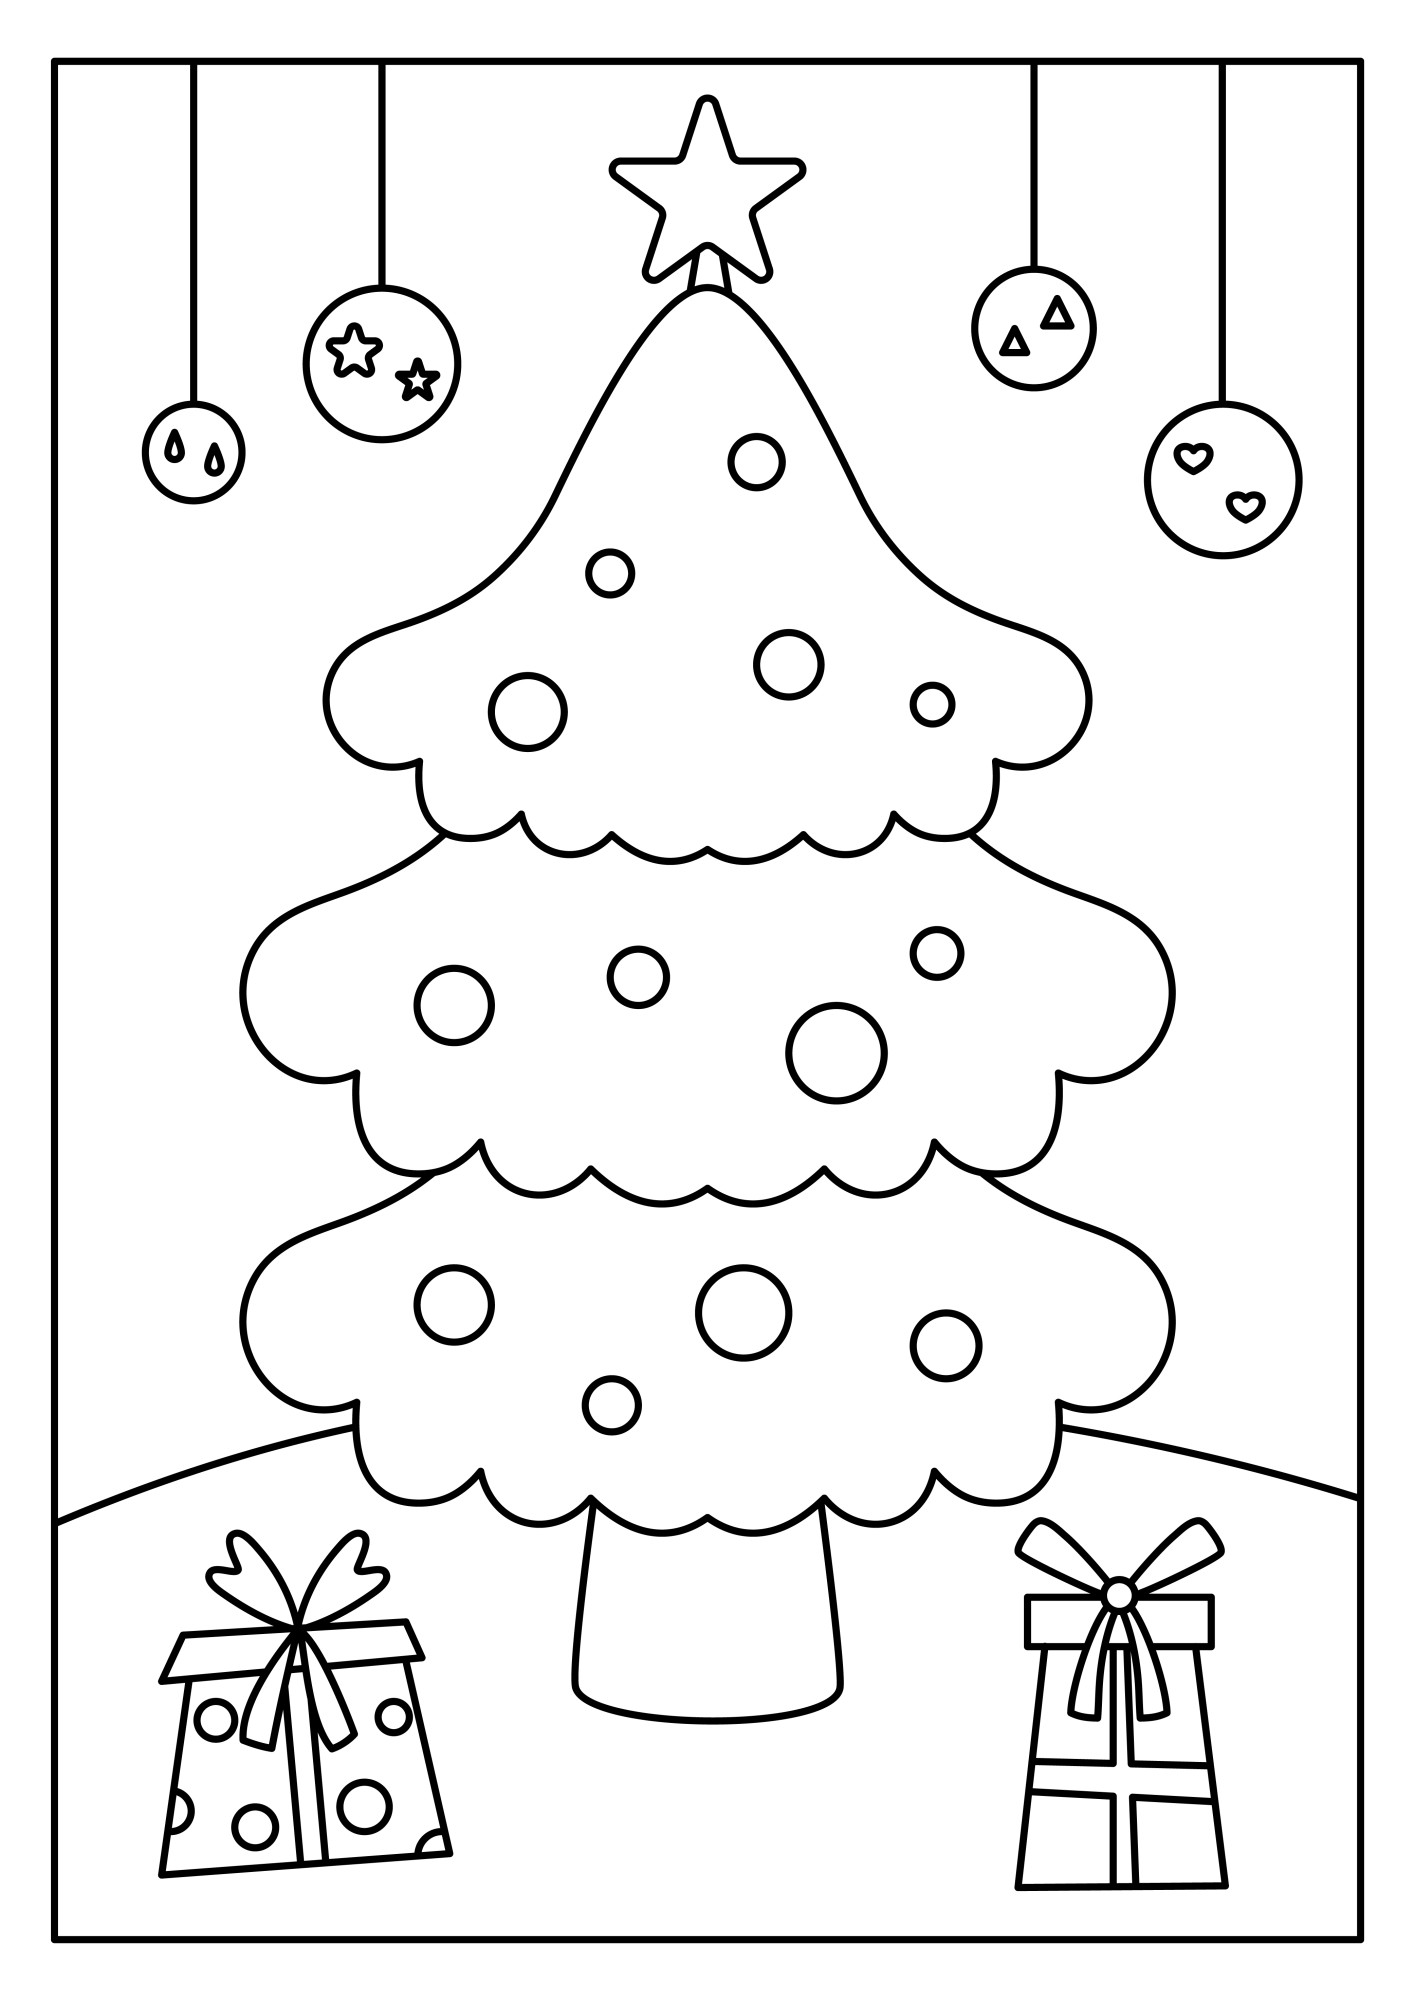 Раскраска для детей: новогодняя ёлка с праздничными подарками и игрушками